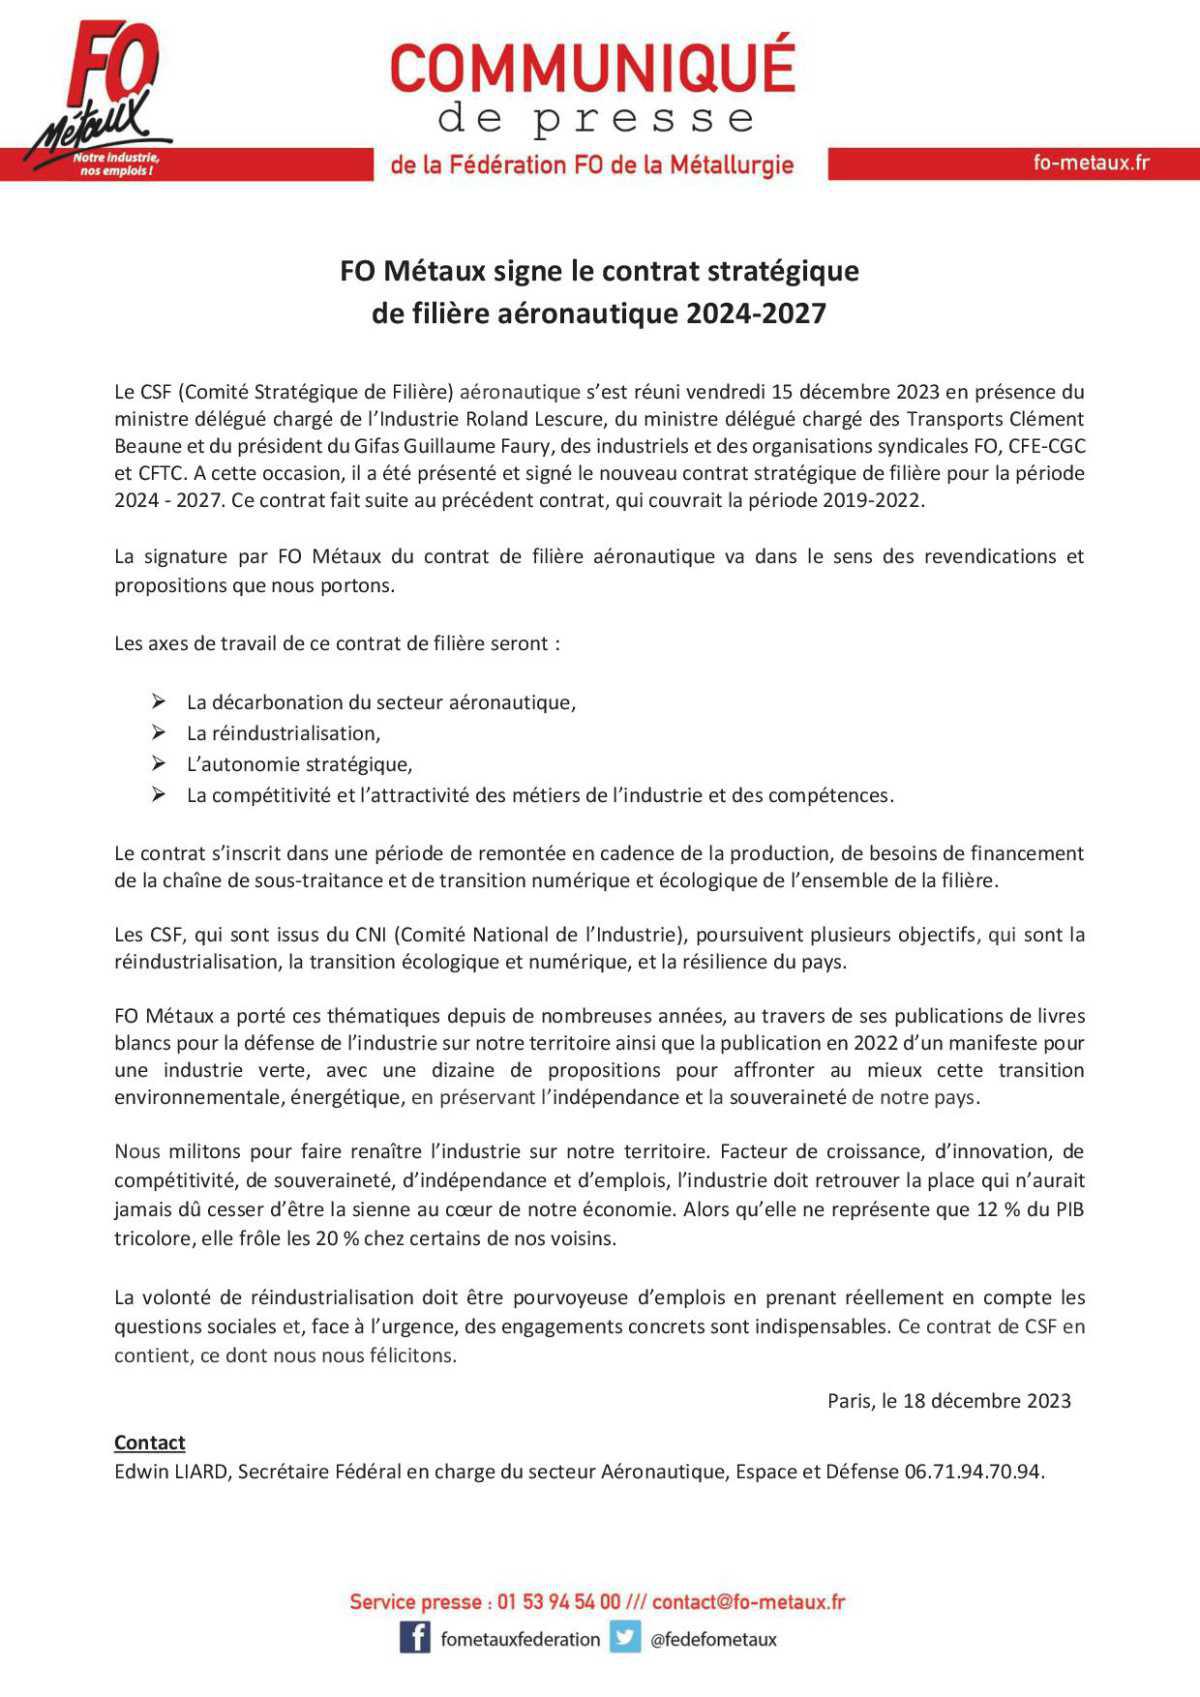 FO Métaux signe le contrat stratégique de la filière aéronautique 2024-2027